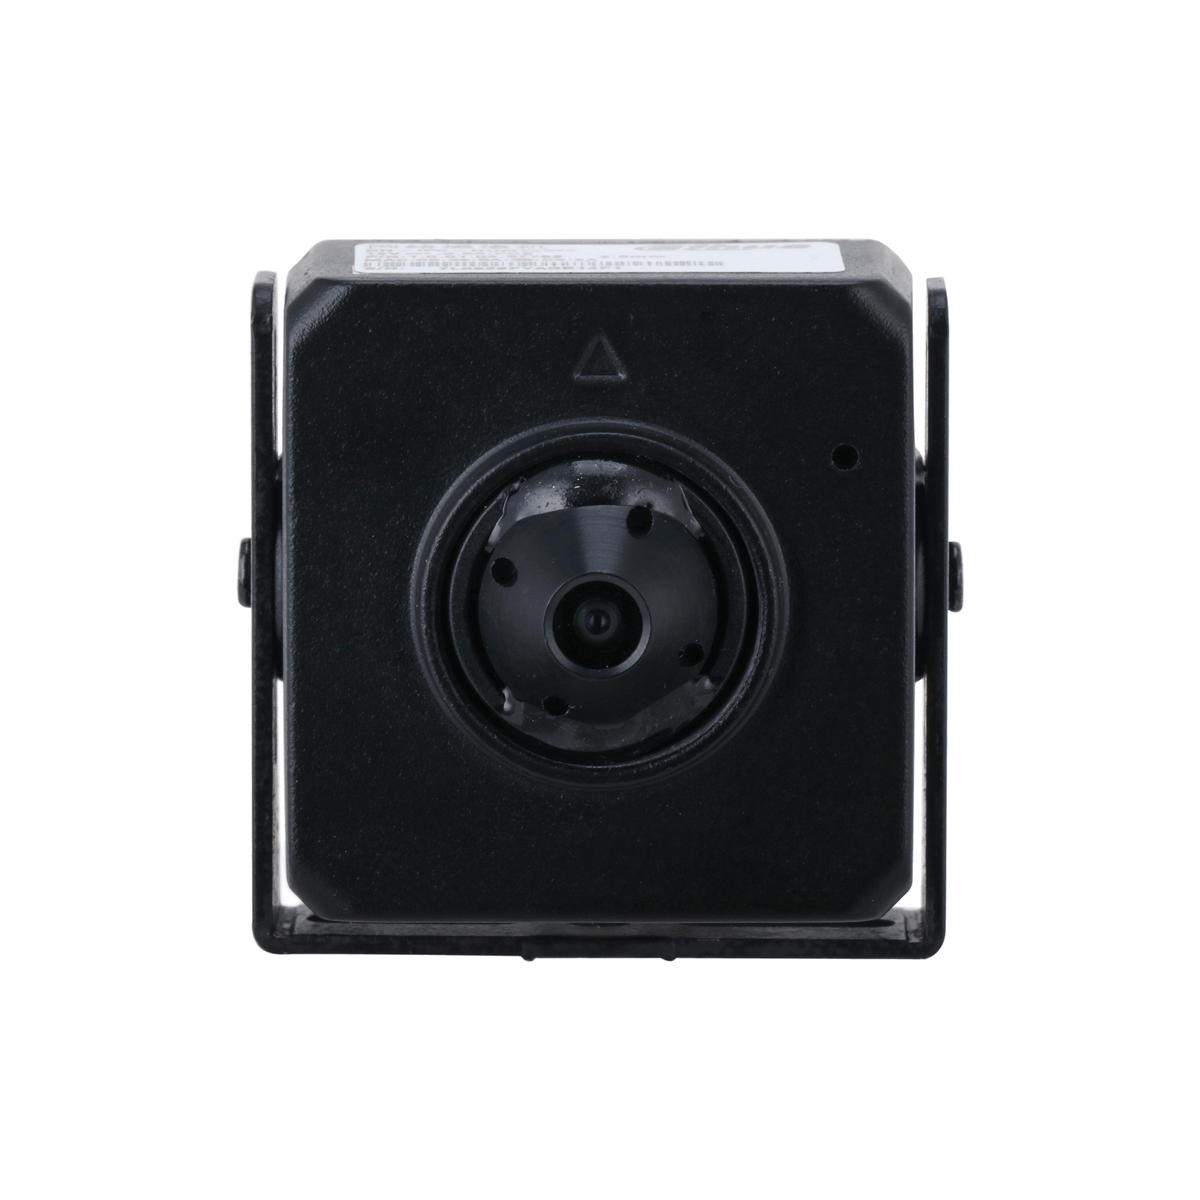 DAHUA IPC-HUM4231S-L4 2MP Fixed-focal Network Camera